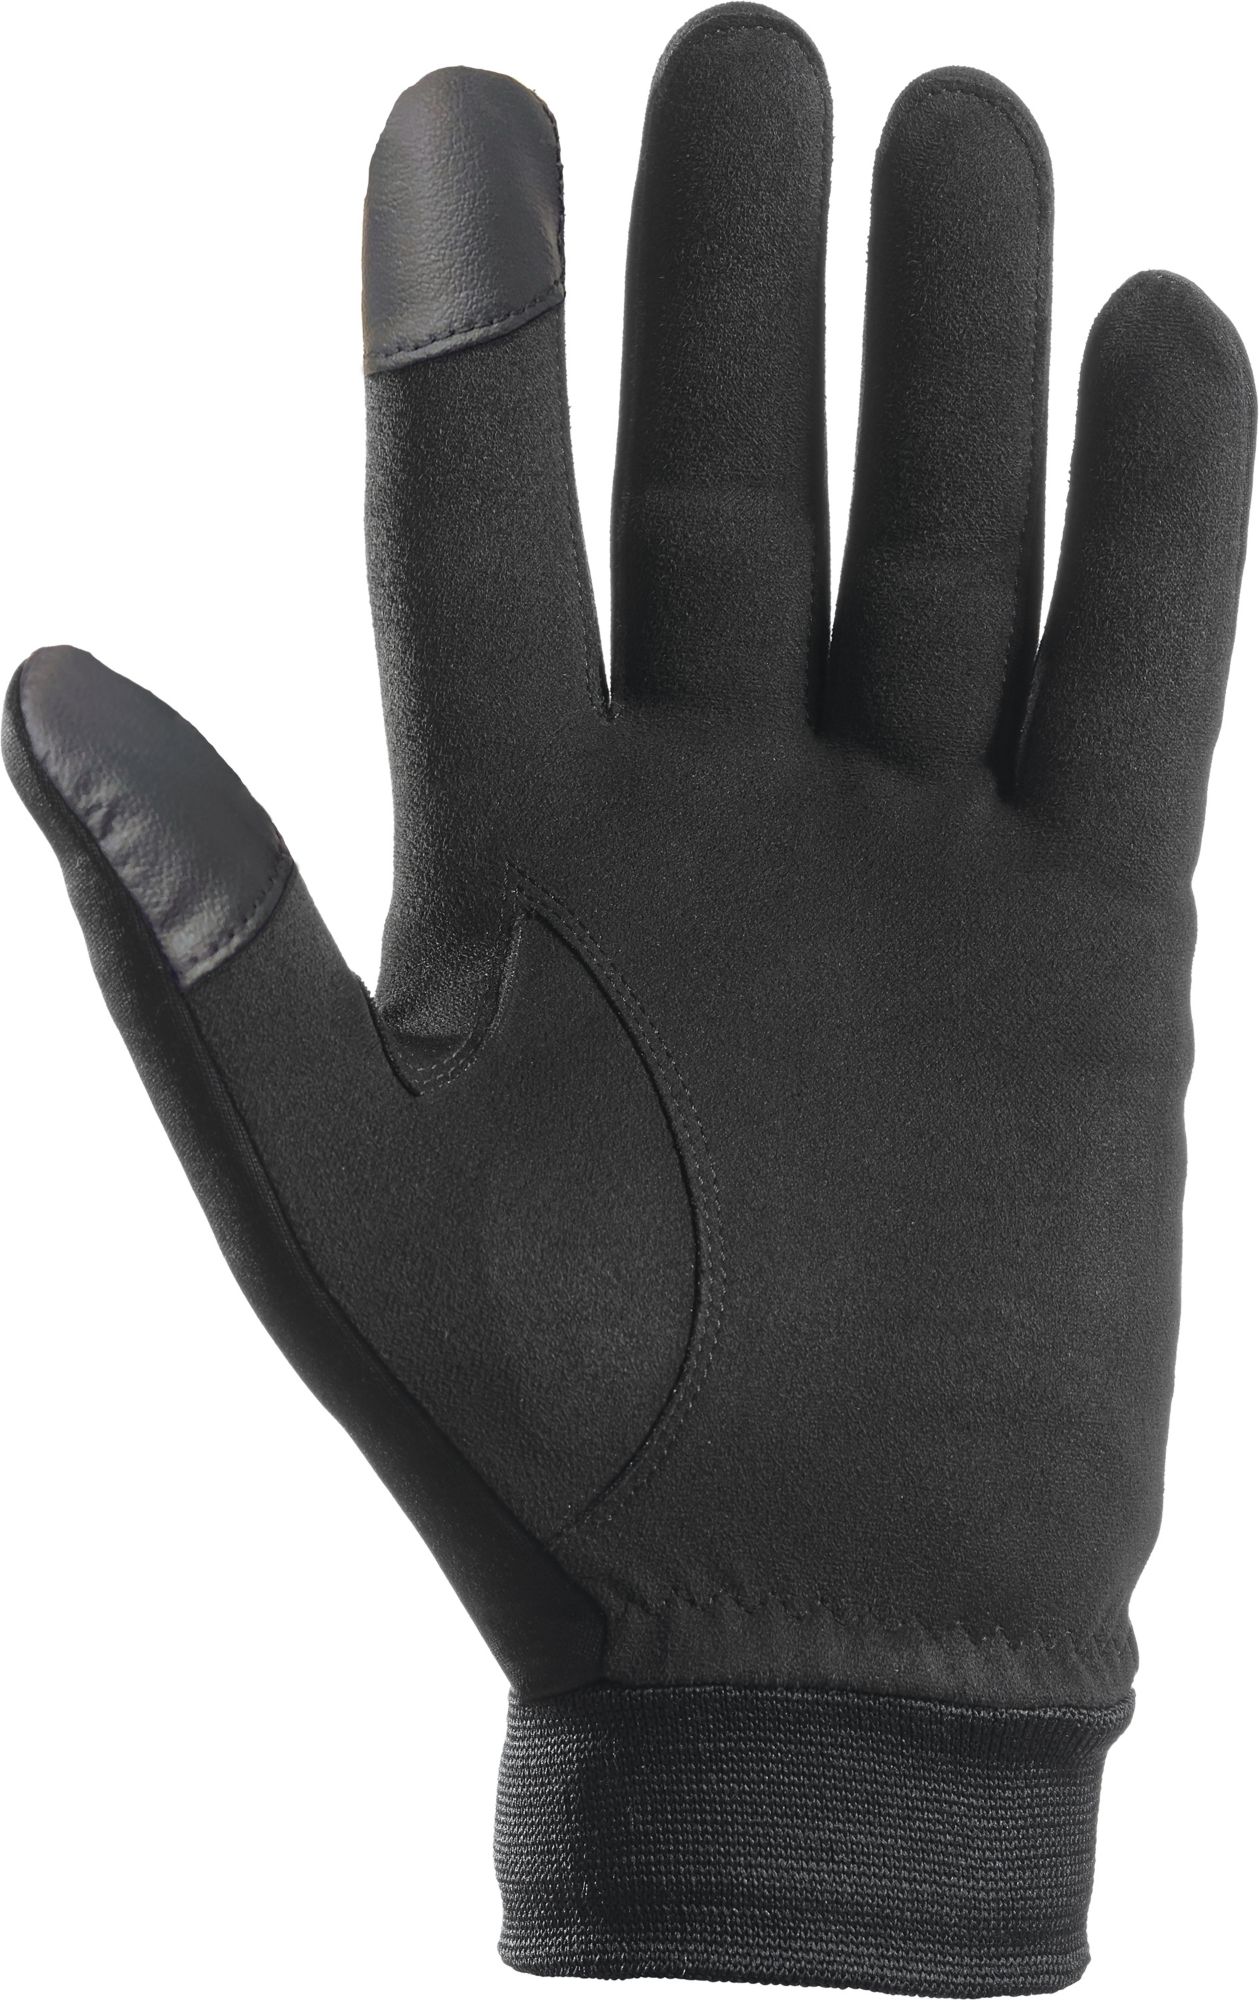 Maxfli Winter Tech Golf Glove